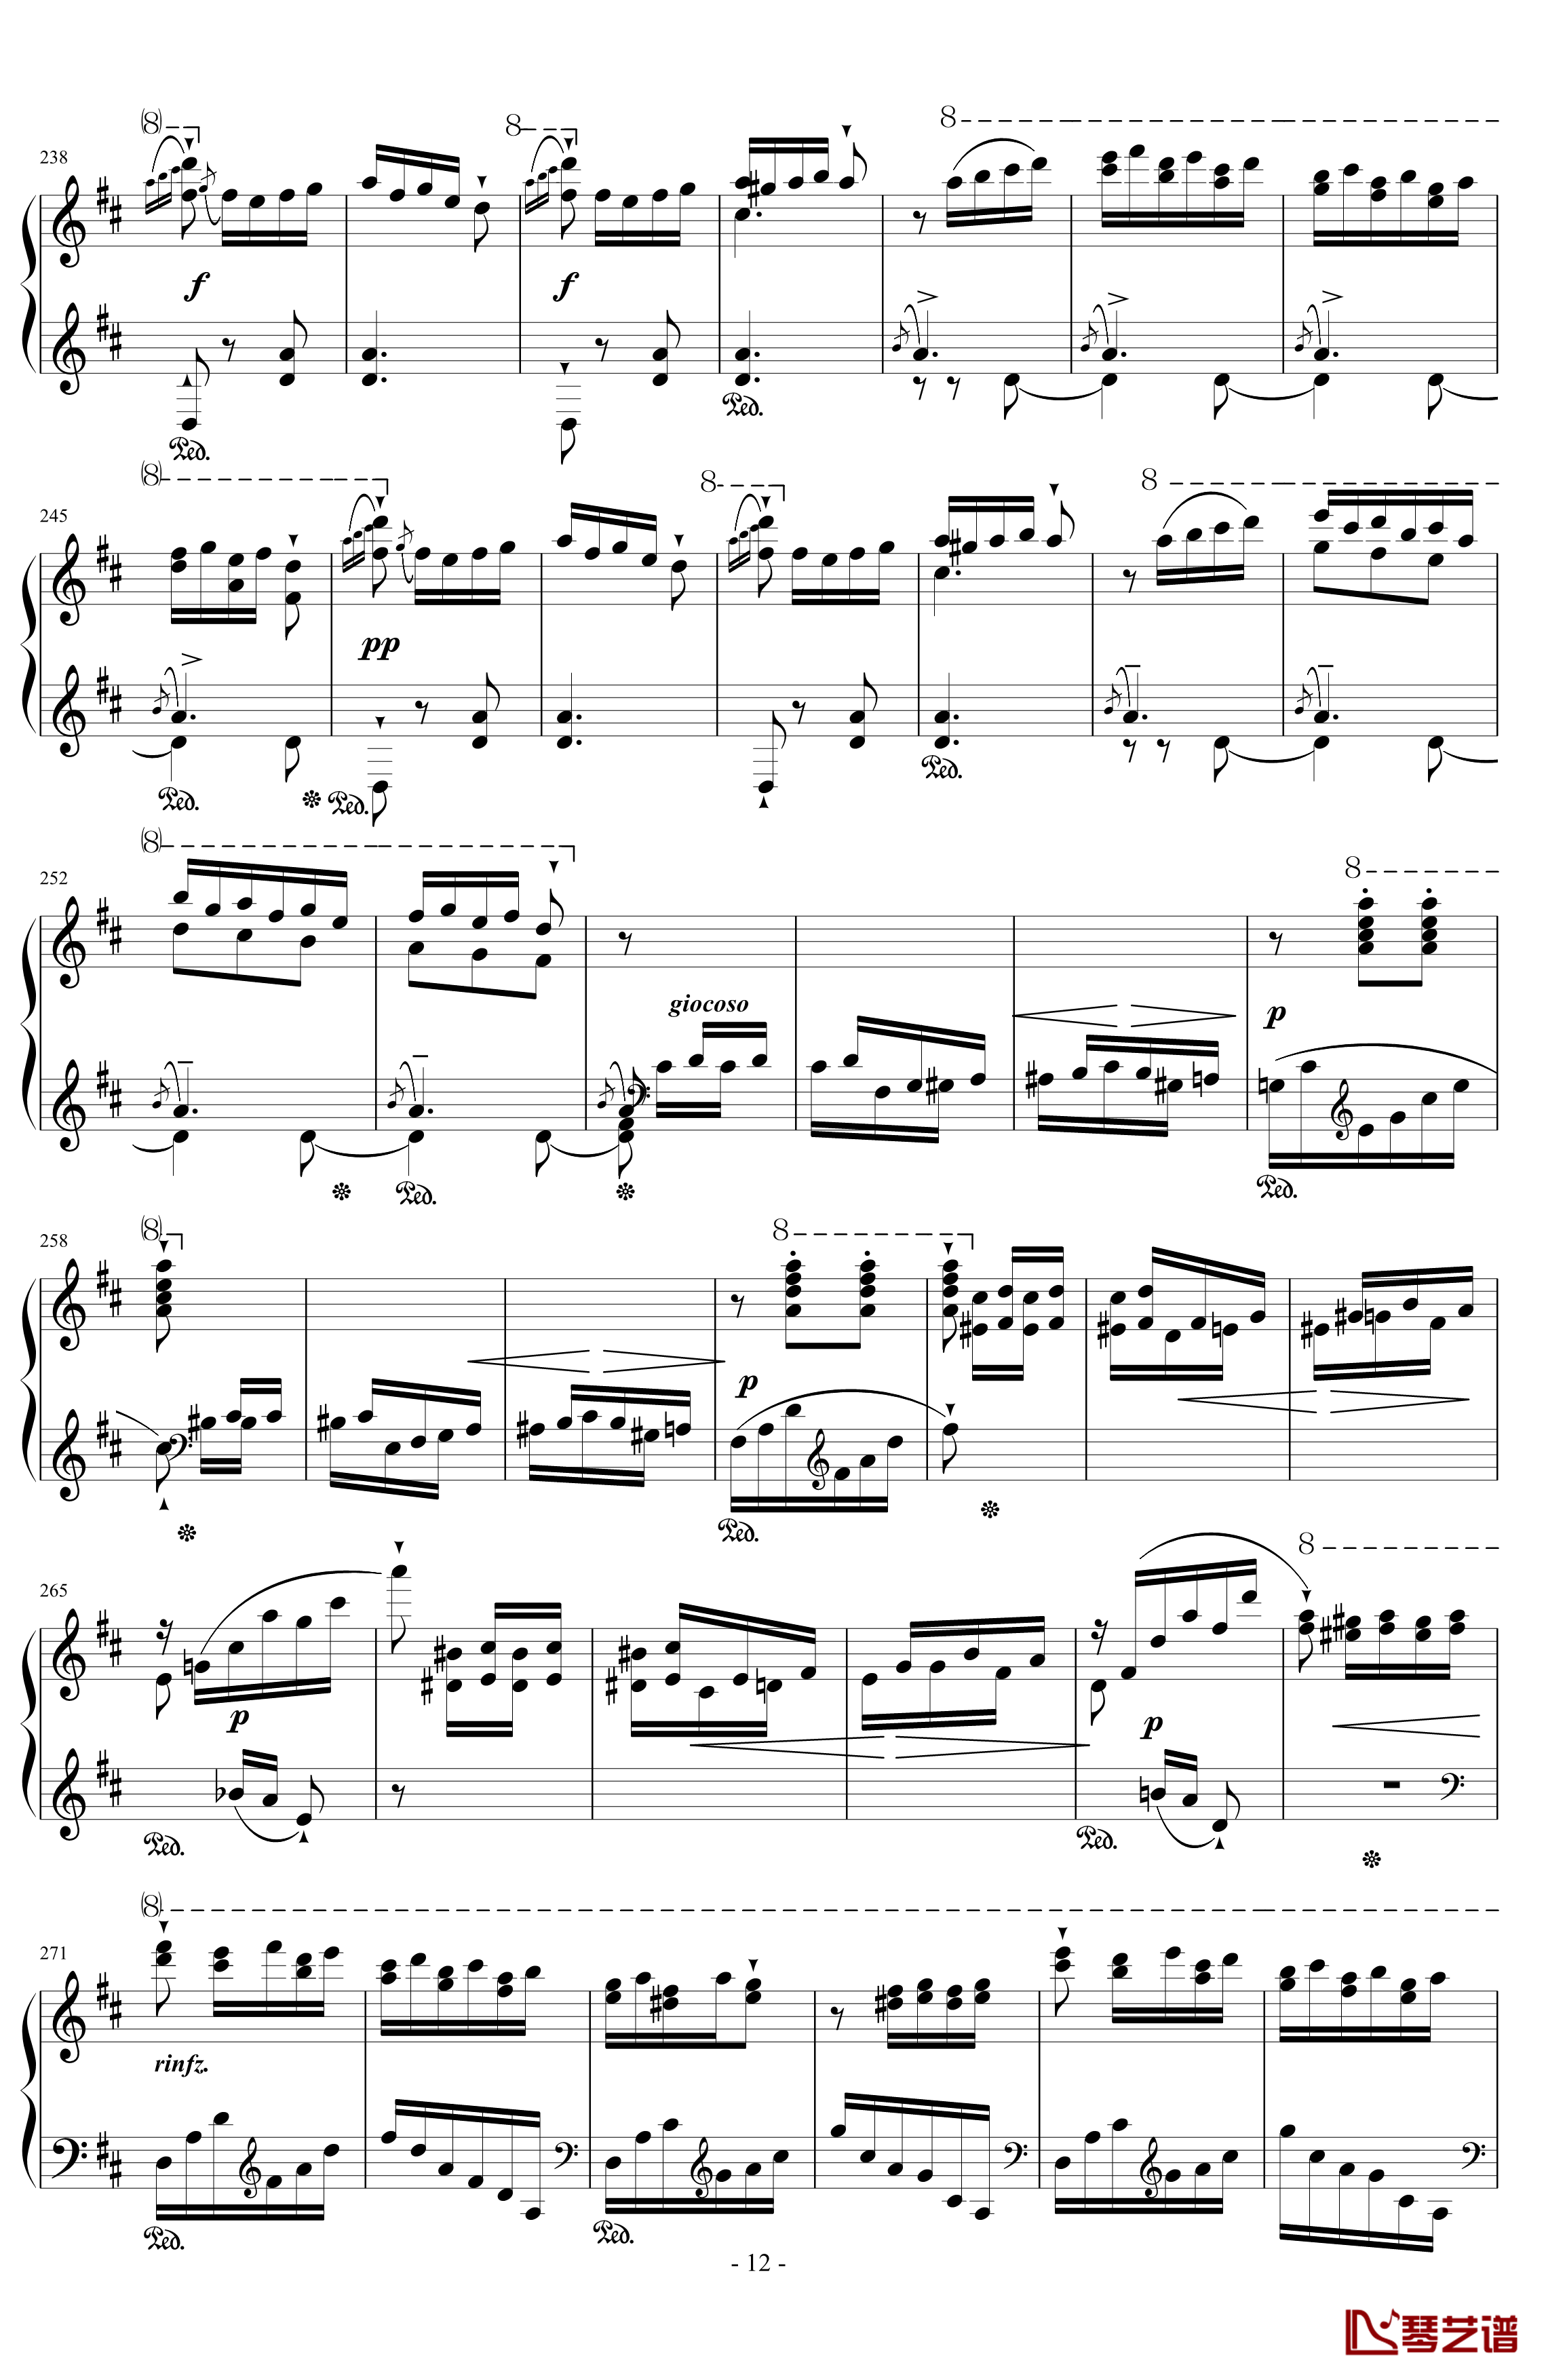 西班牙狂想曲钢琴谱-难度极高的炫技大作-李斯特12